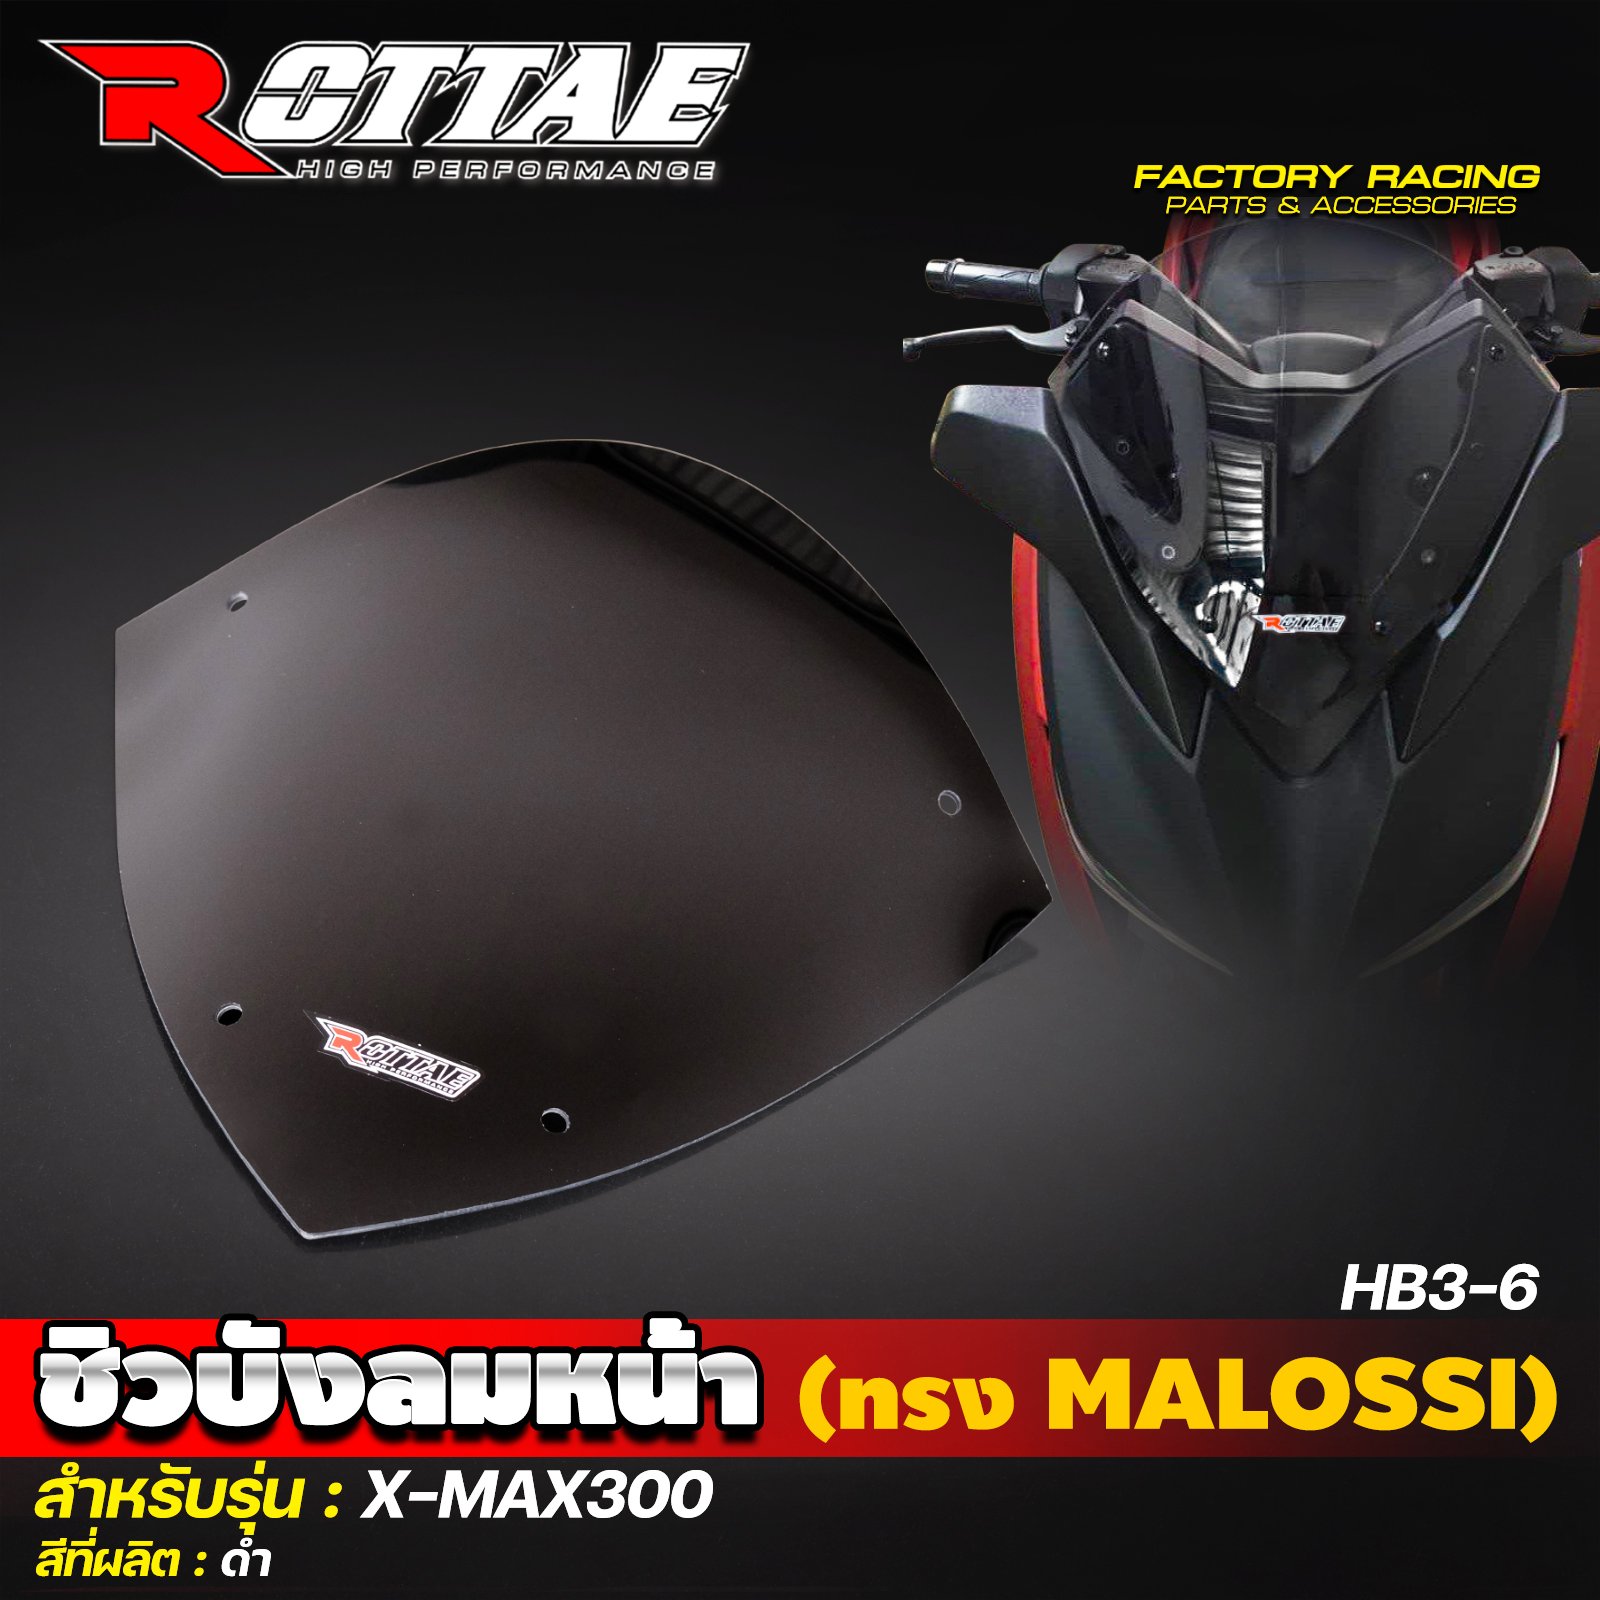 ชิวบังลมหน้า (ทรง MALOSSI) #3-6 #X-MAX300 ROTTAE